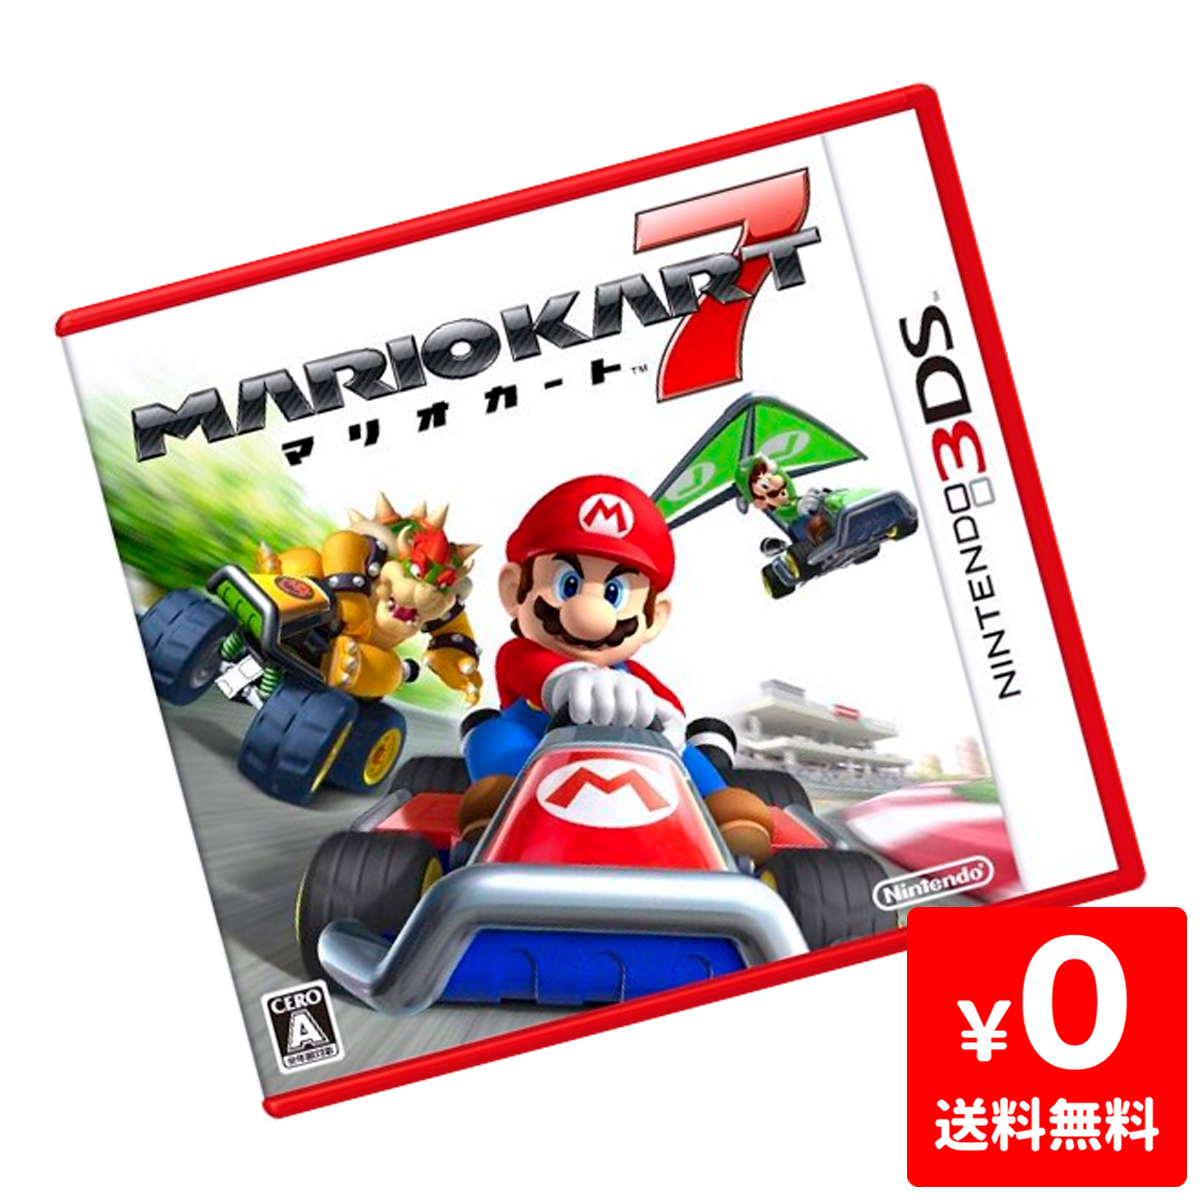 楽天市場 3ds マリオカート7 ソフト ケースあり Nintendo 任天堂 ニンテンドー 中古 Iimo リユース店